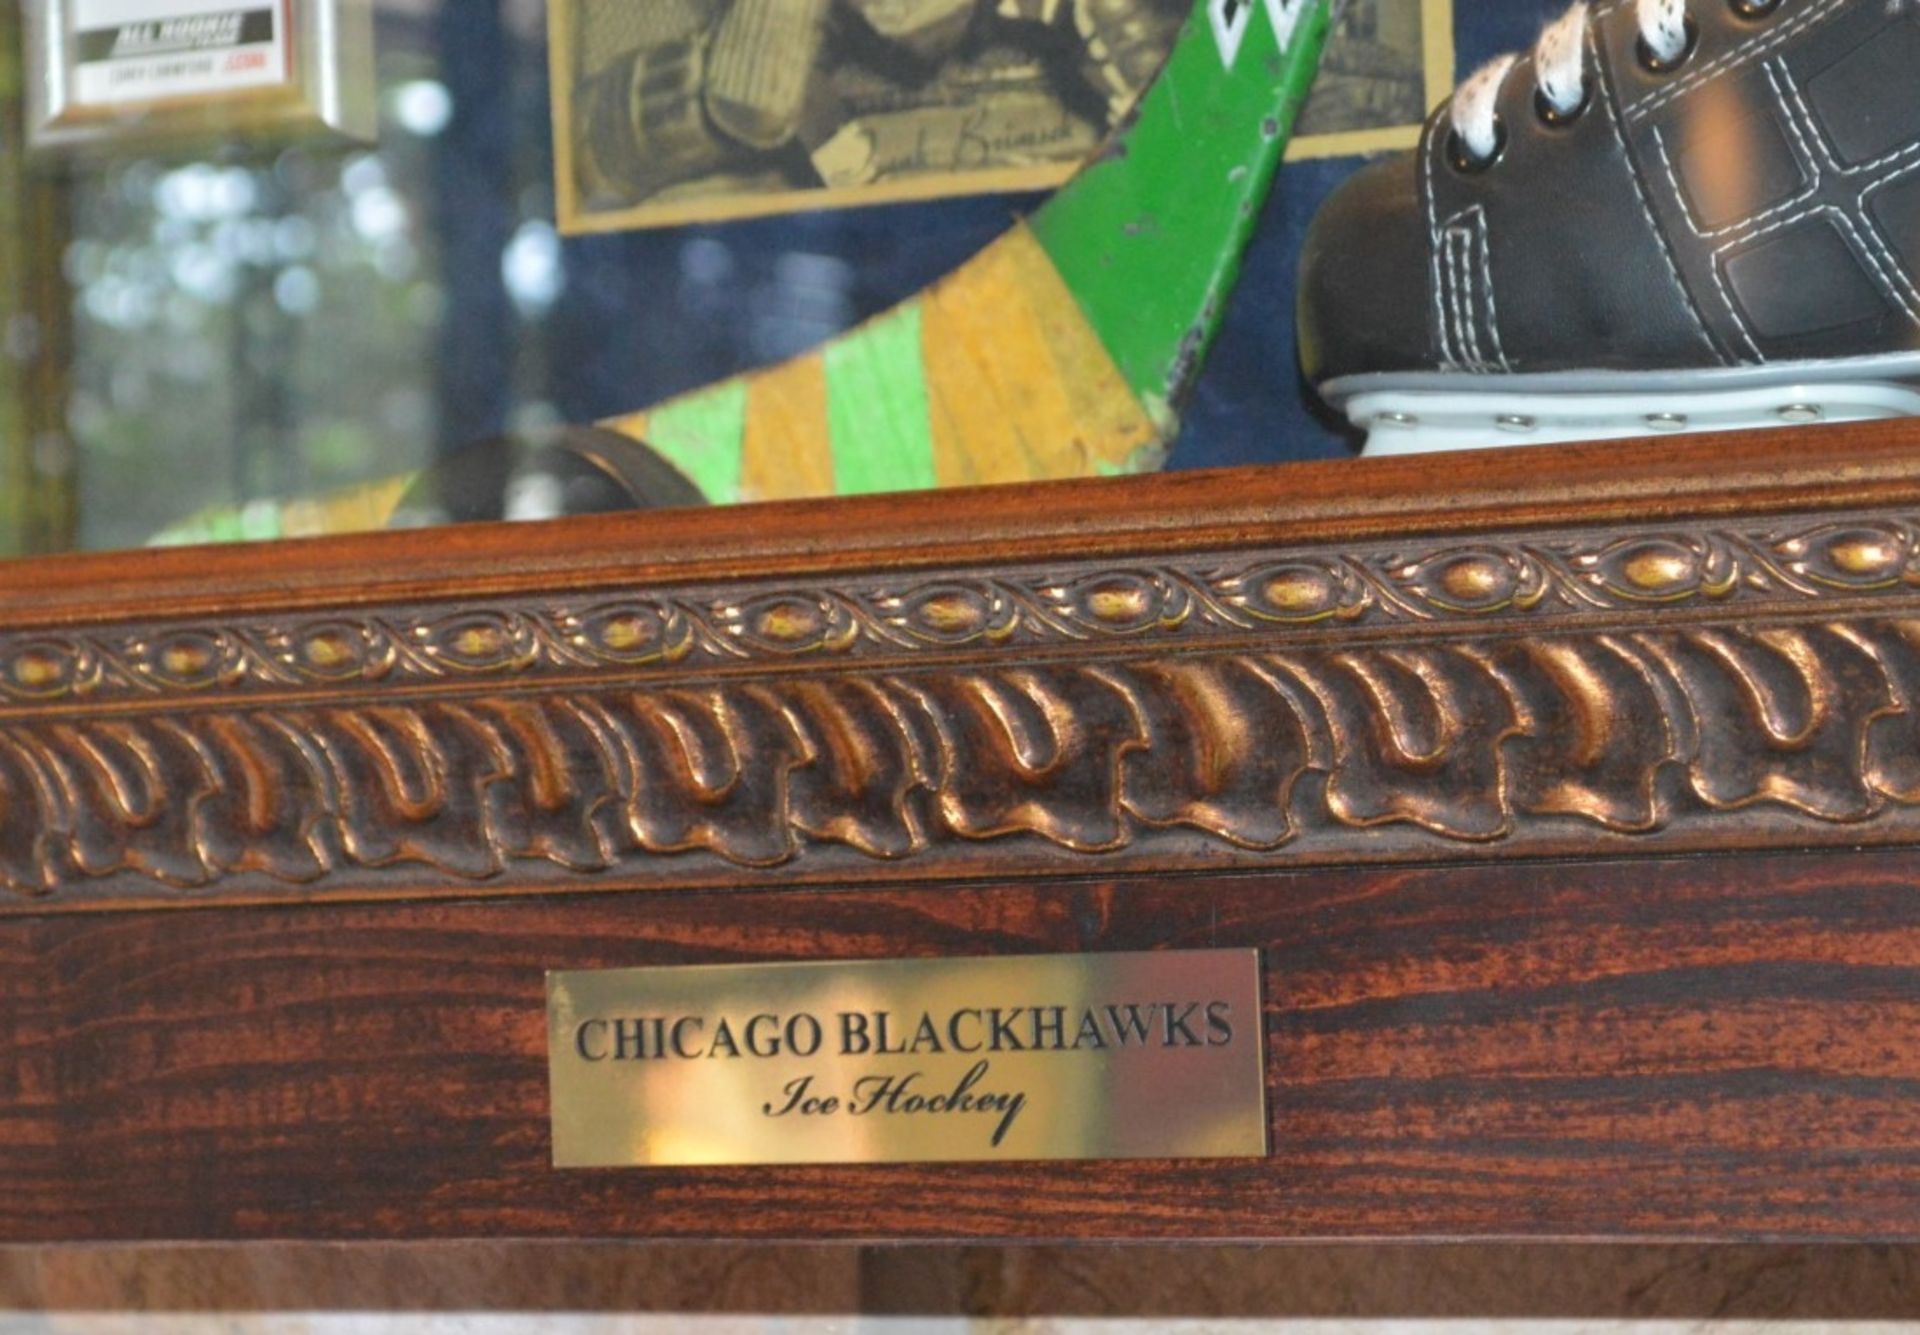 1 x Americana Wall Mounted Illuminated Display Case - CHICAGO BLACKHAWKS ICE HOCKEY - Includes - Image 4 of 5